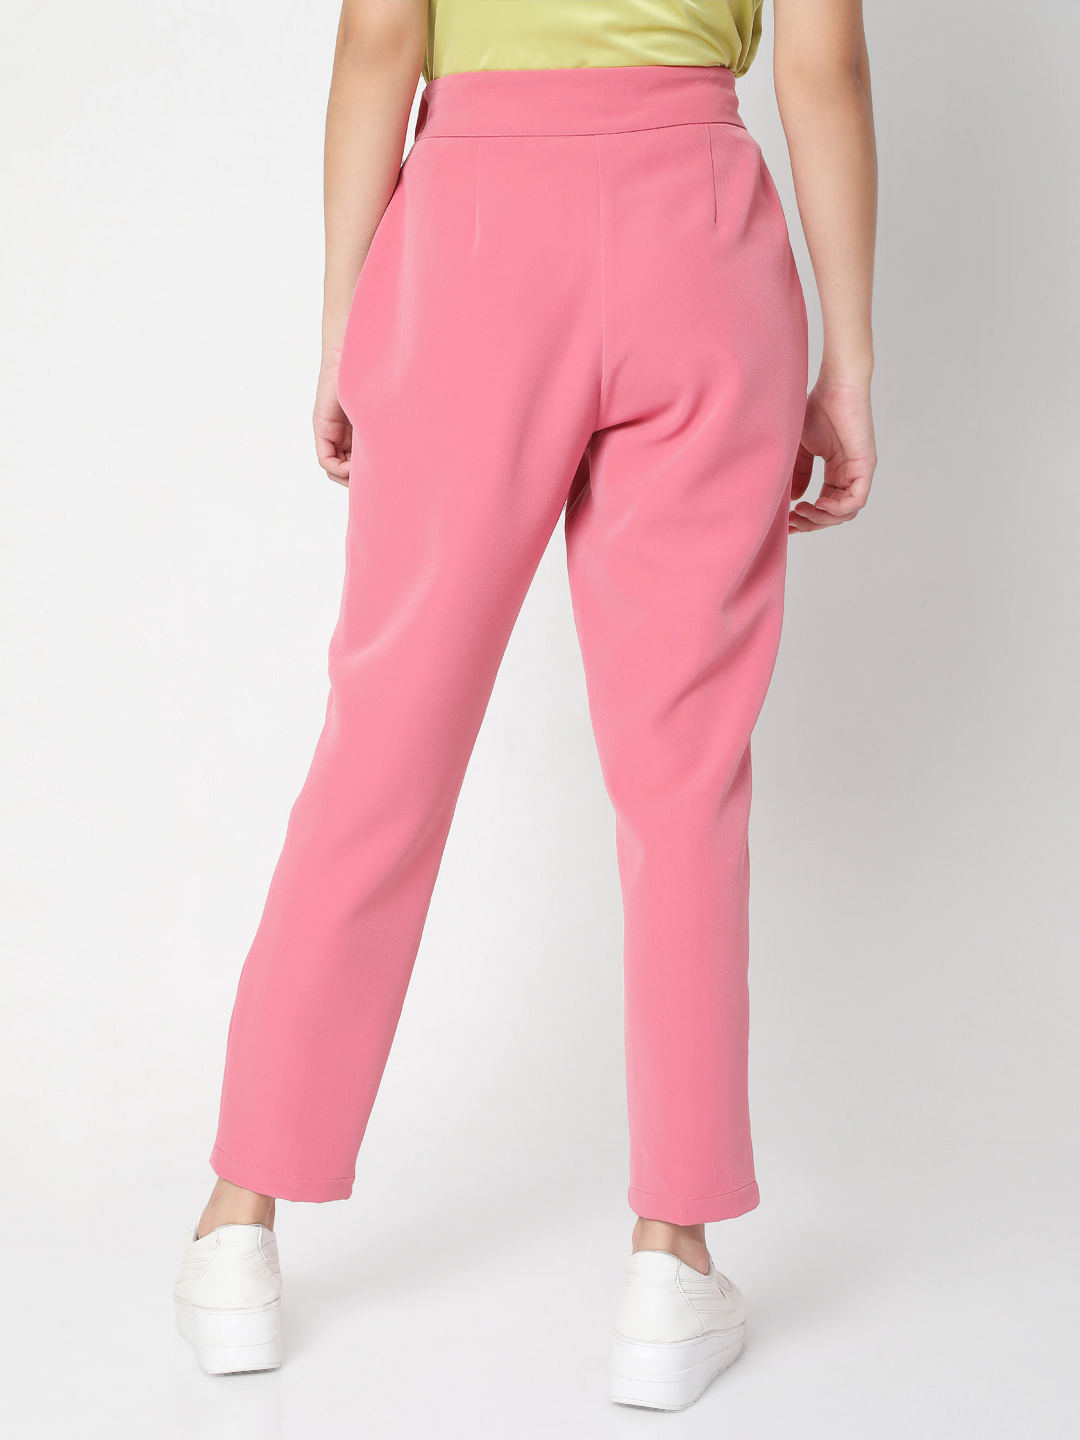 Buy Women Pastel pink Waistcoat set Online in India